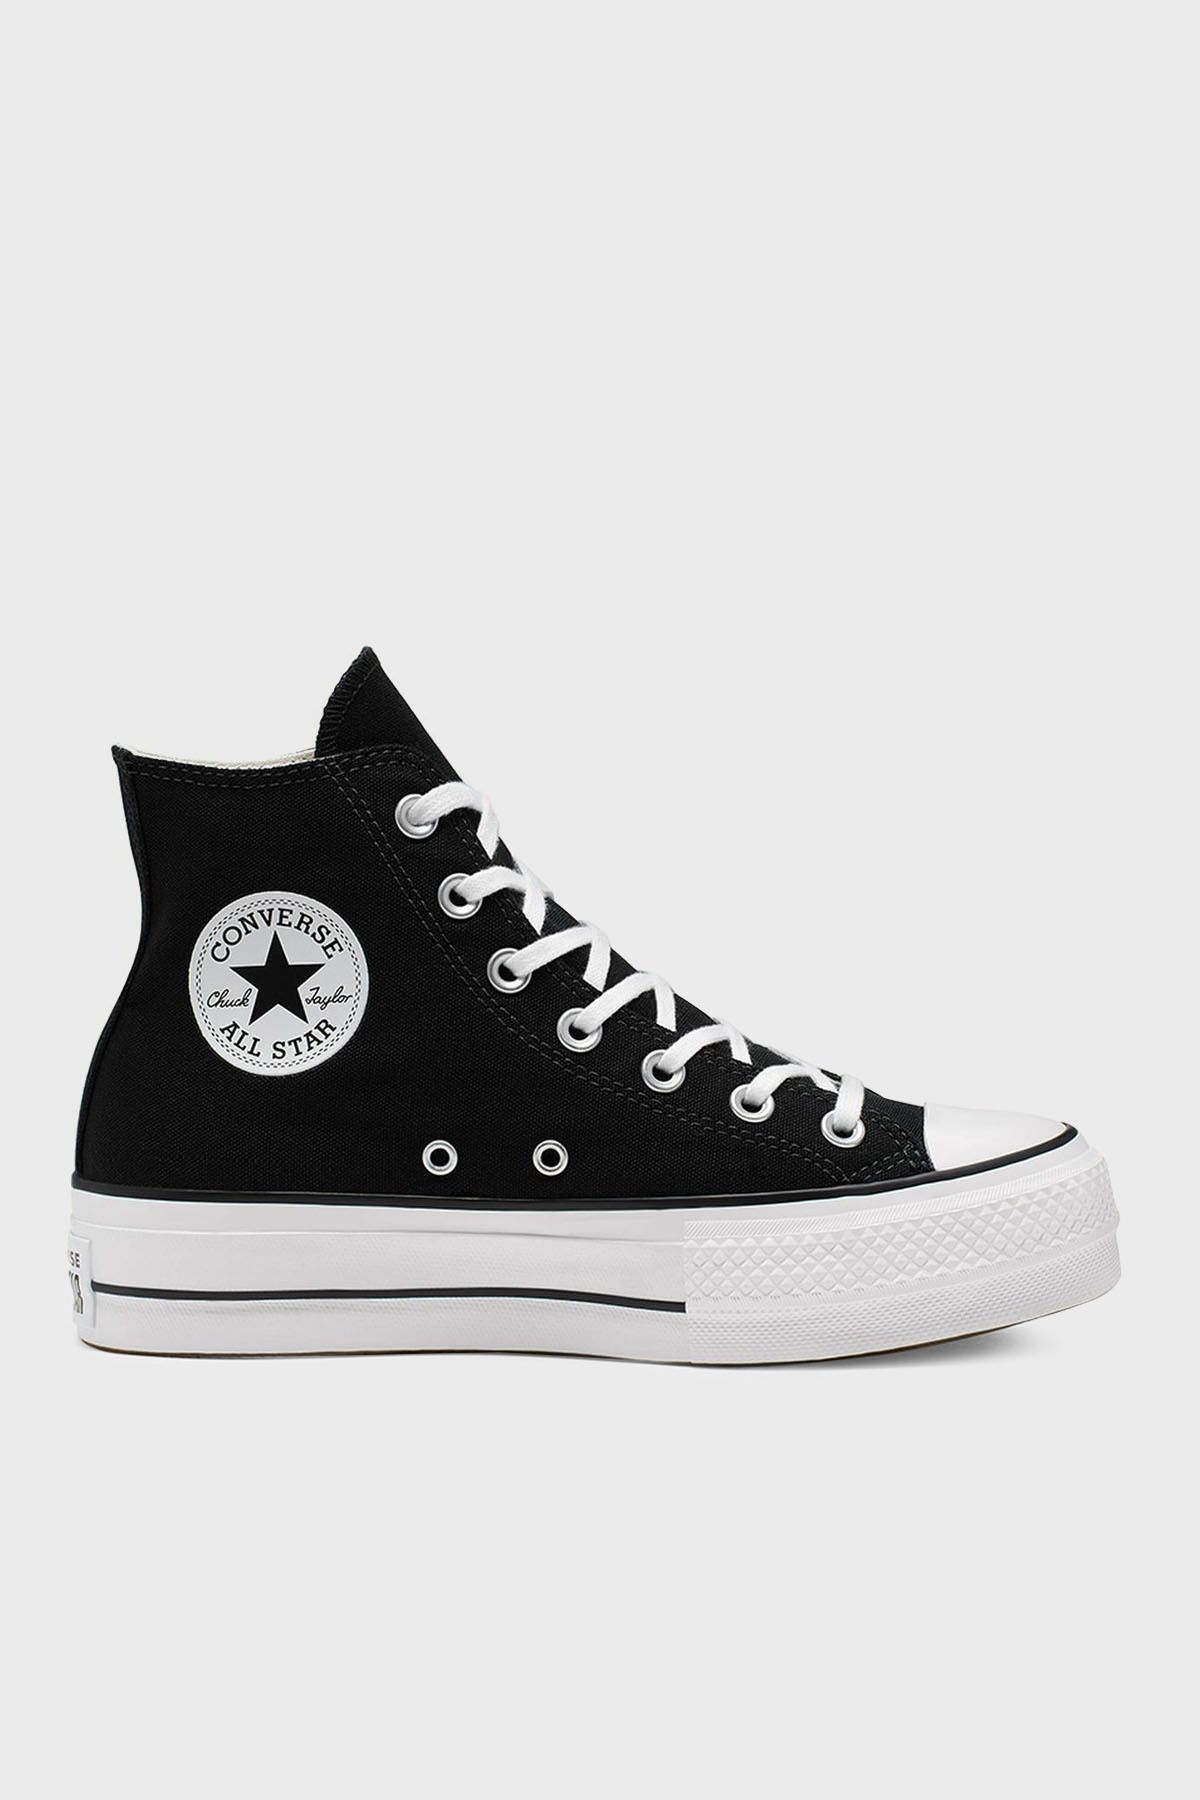 Converse Chuck Taylor All Star Sneaker Ayakkabı AYAKKABI 560845C 001